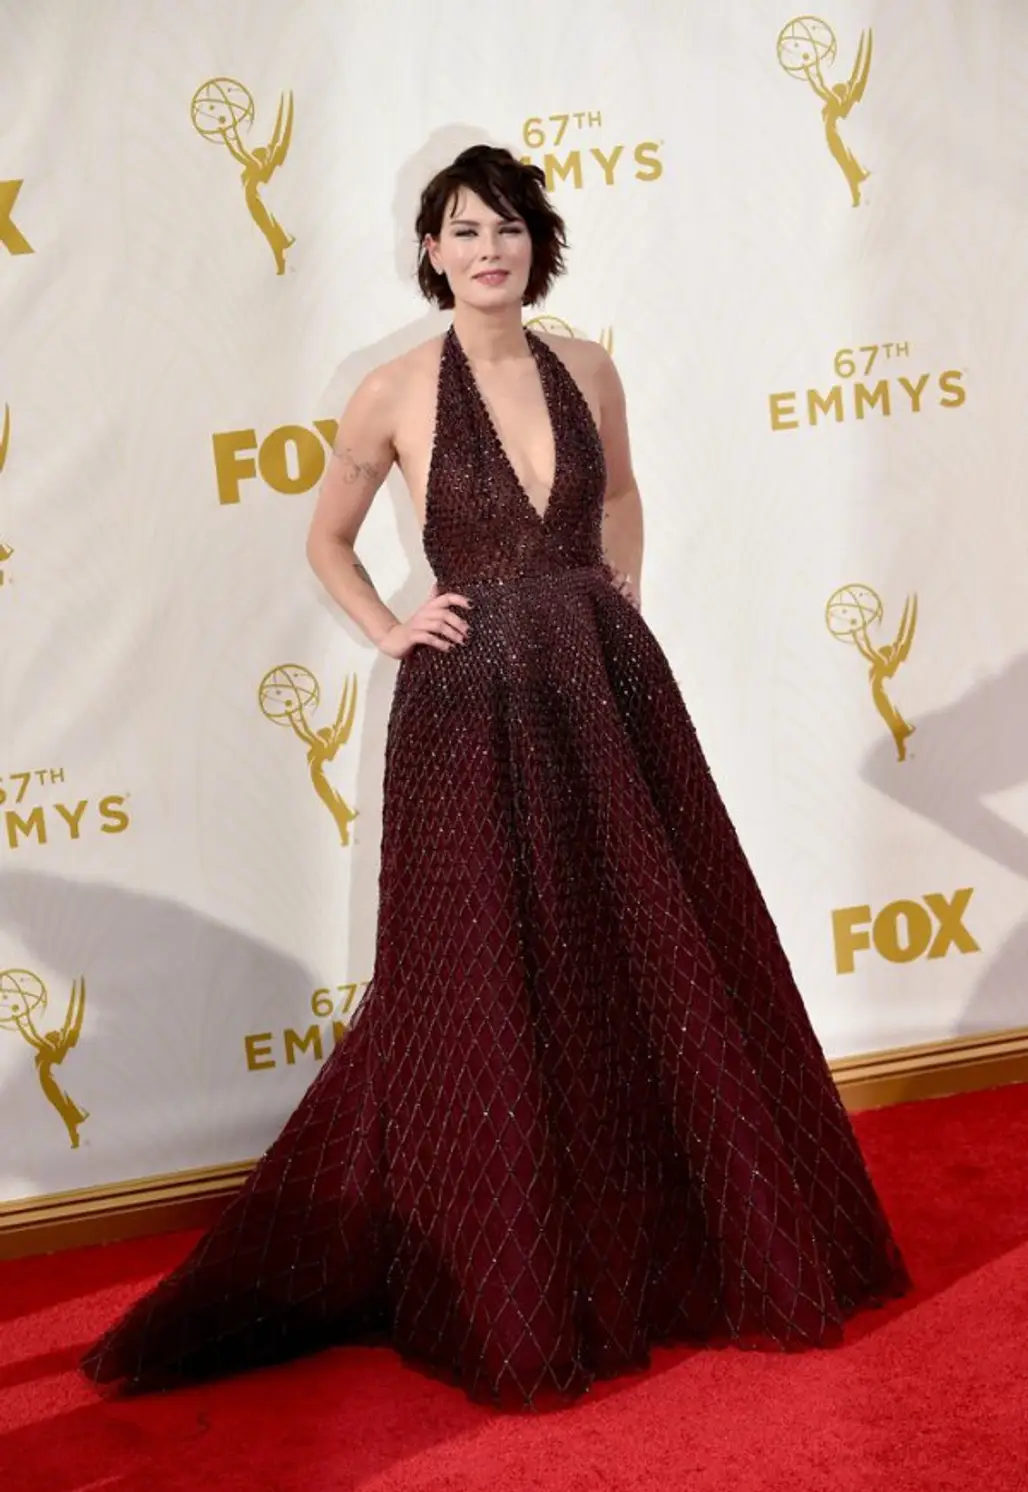 Lena Headey at the Emmy Awards